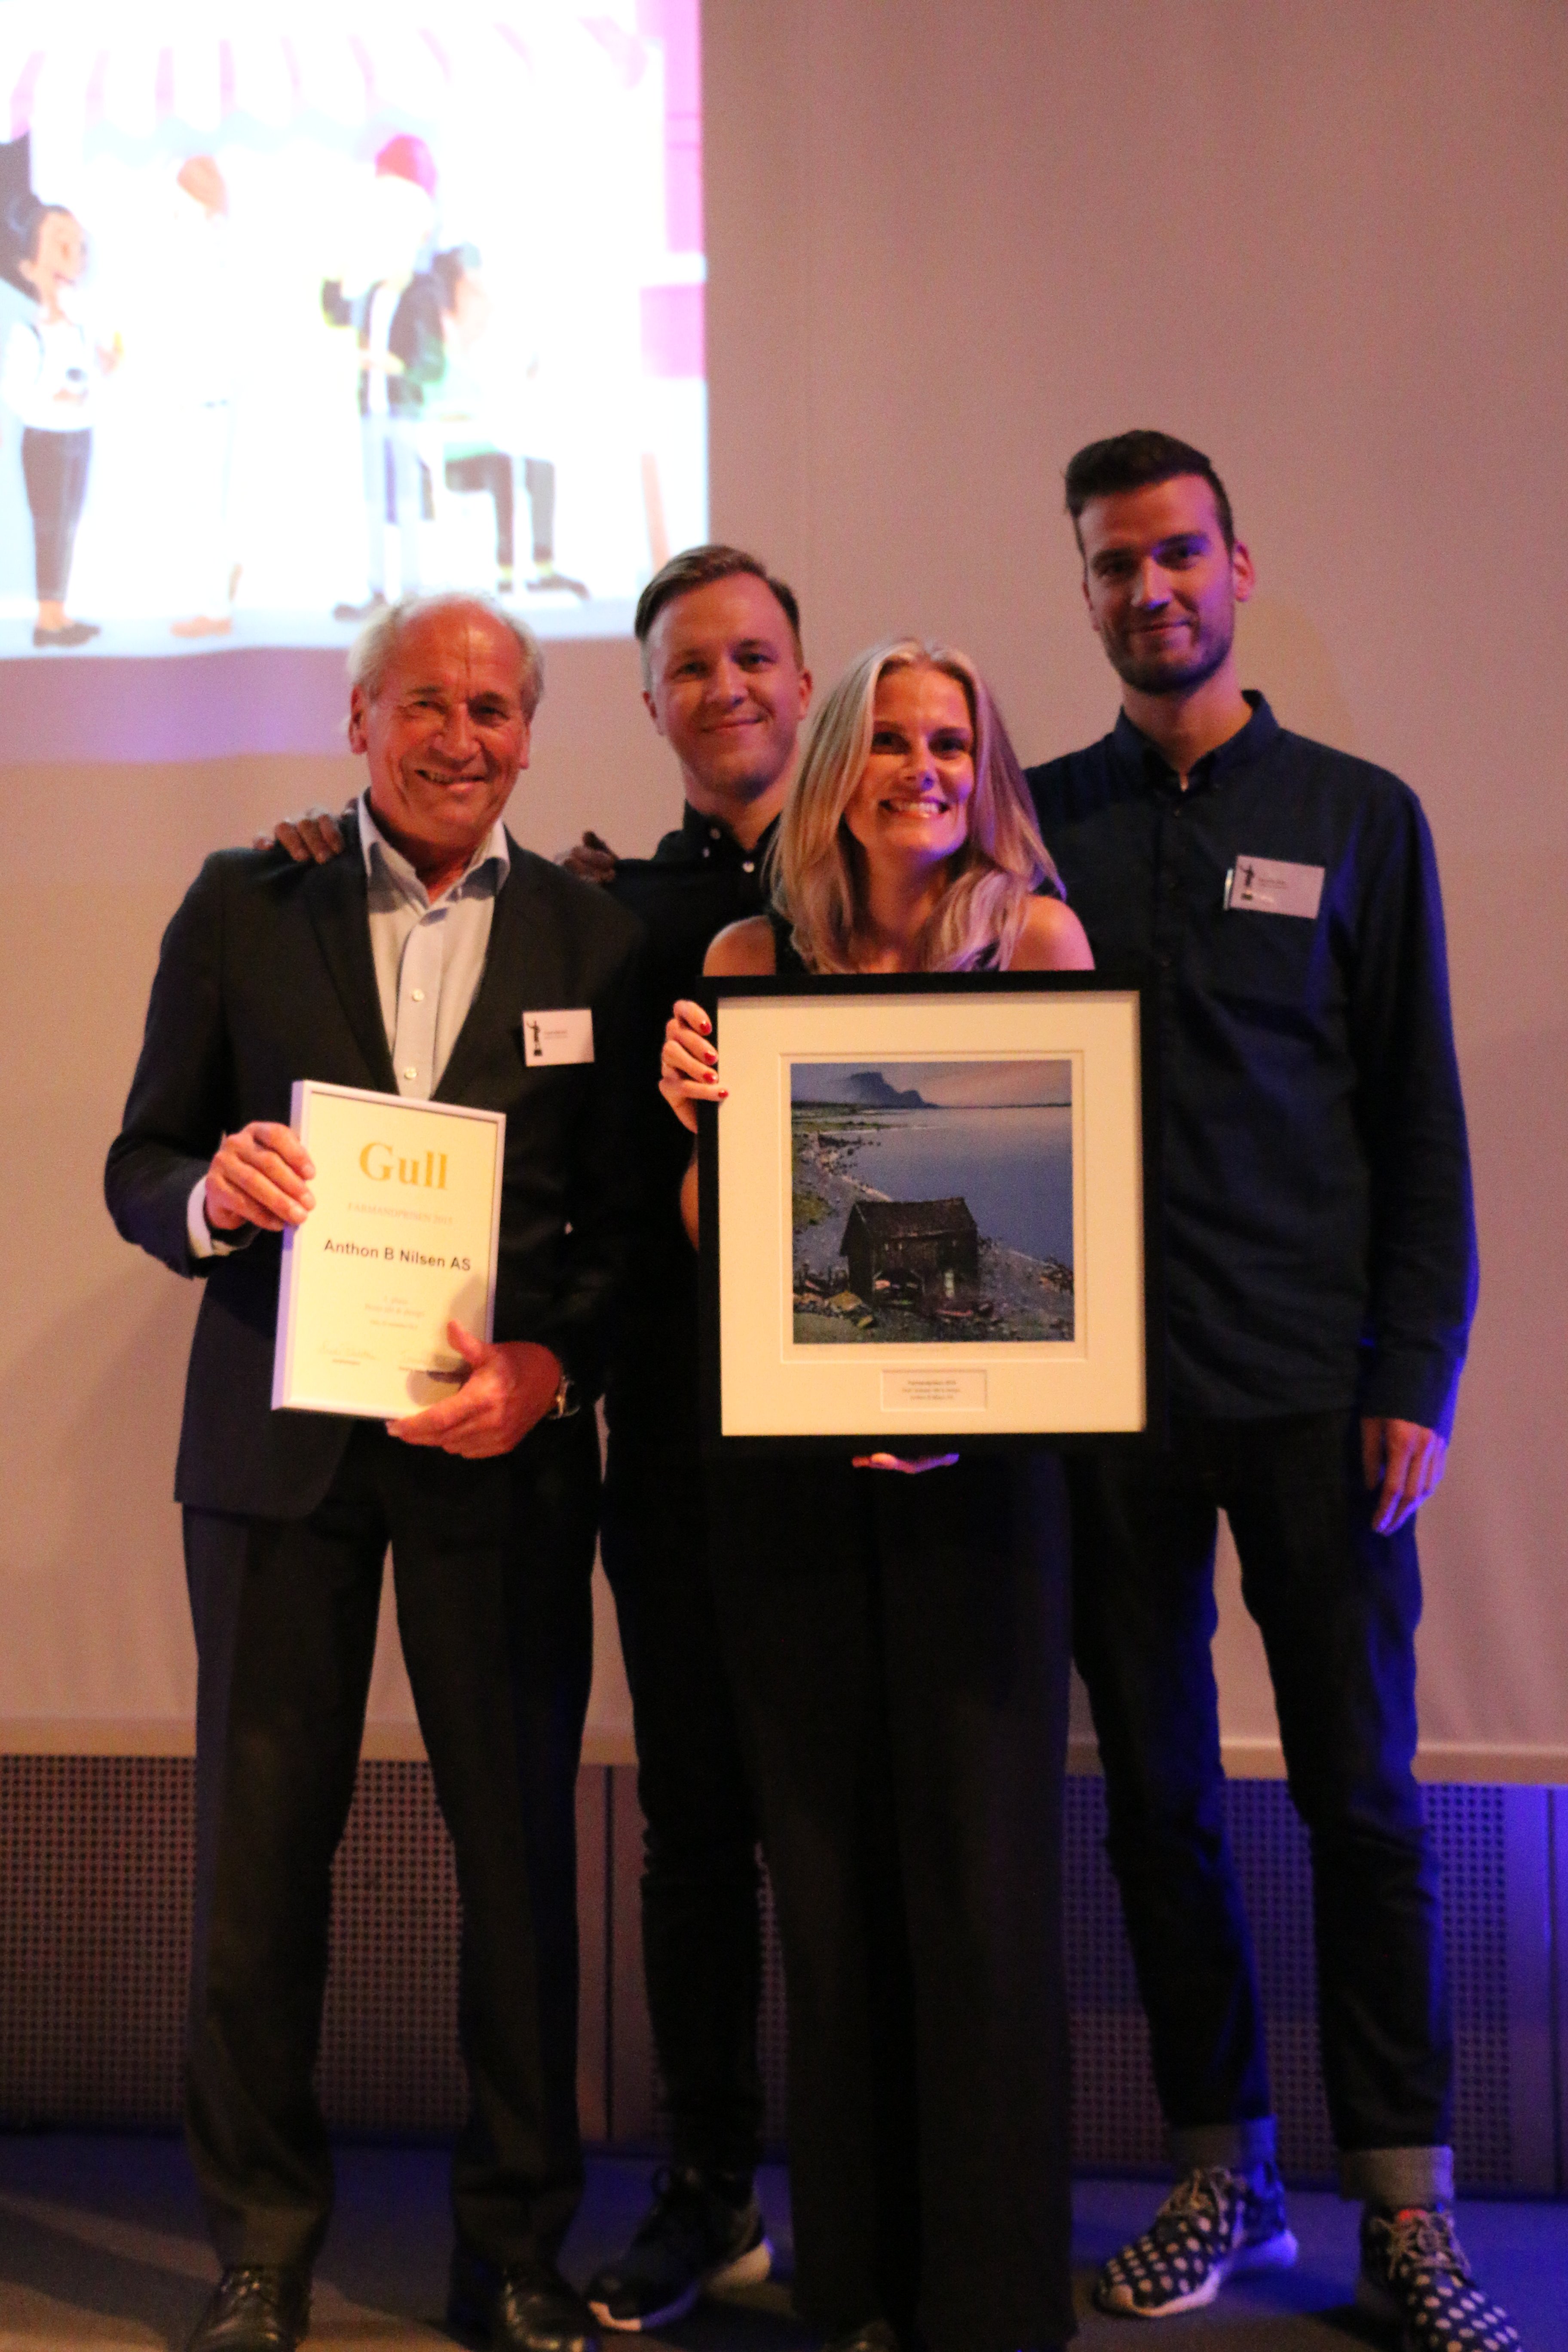 Farmandprisen Beste Årsrapport 2015 - Beste Ide & design nr 1: Anthon B Nilsen